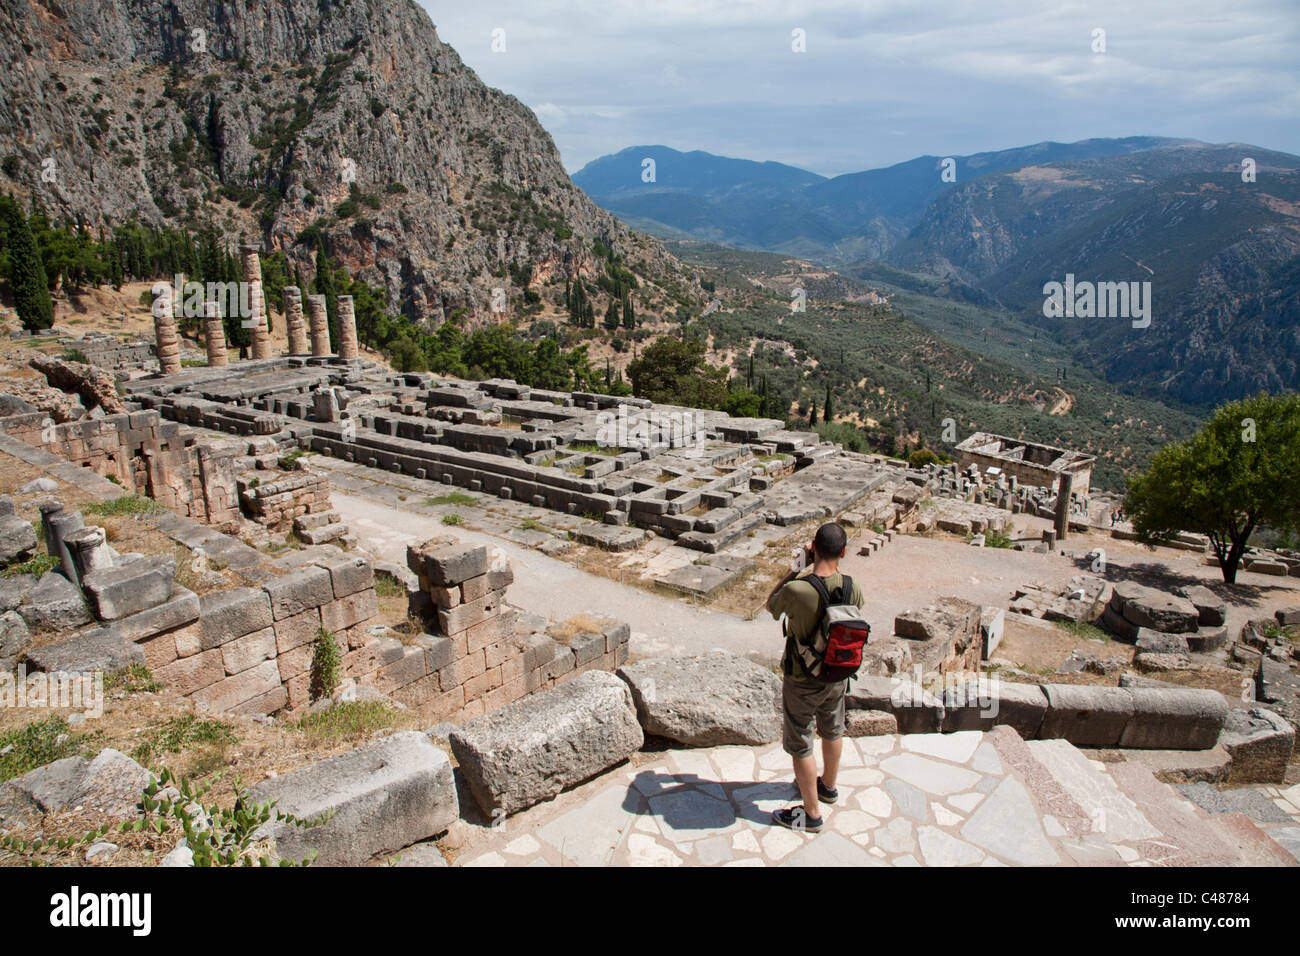 The Temple of Apollo, Delphi Greece Stock Photo